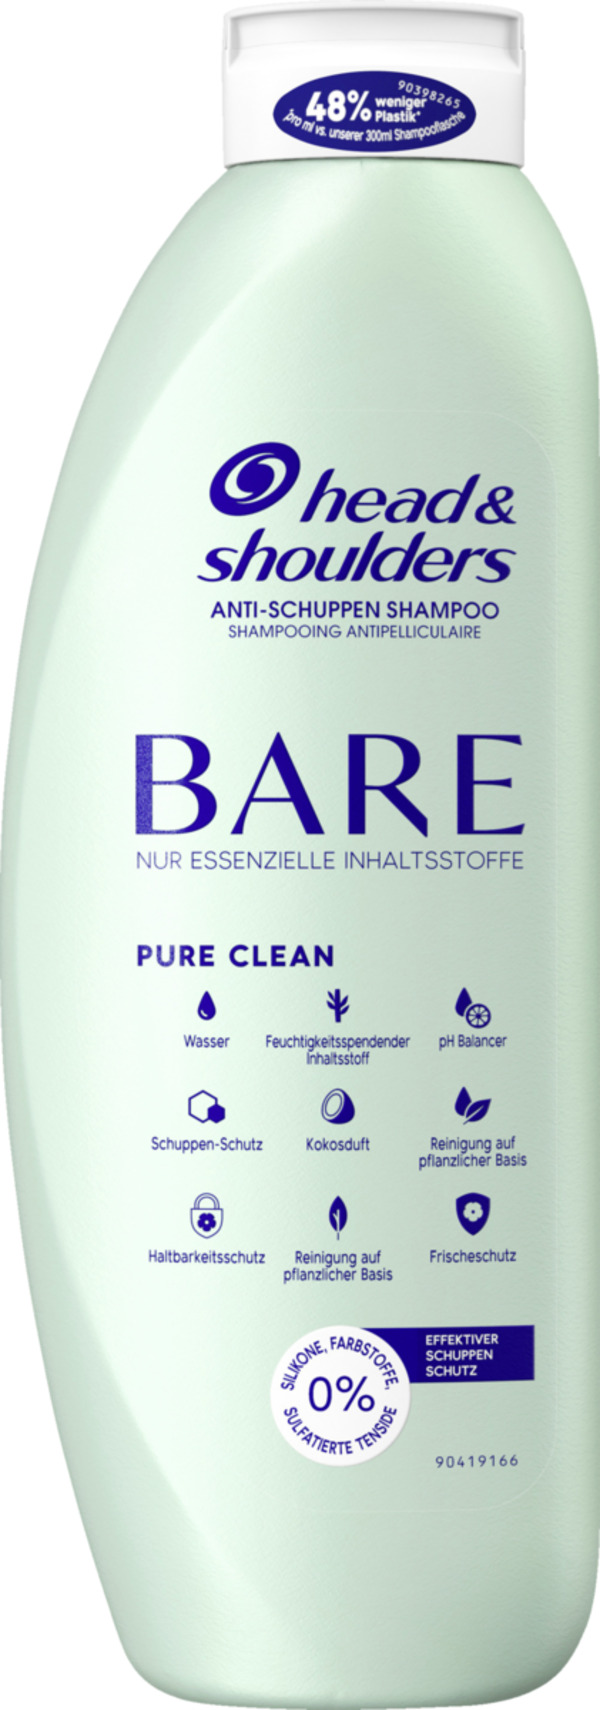 Bild 1 von head & shoulders BARE Pure Clean Anti-Schuppen Shampoo